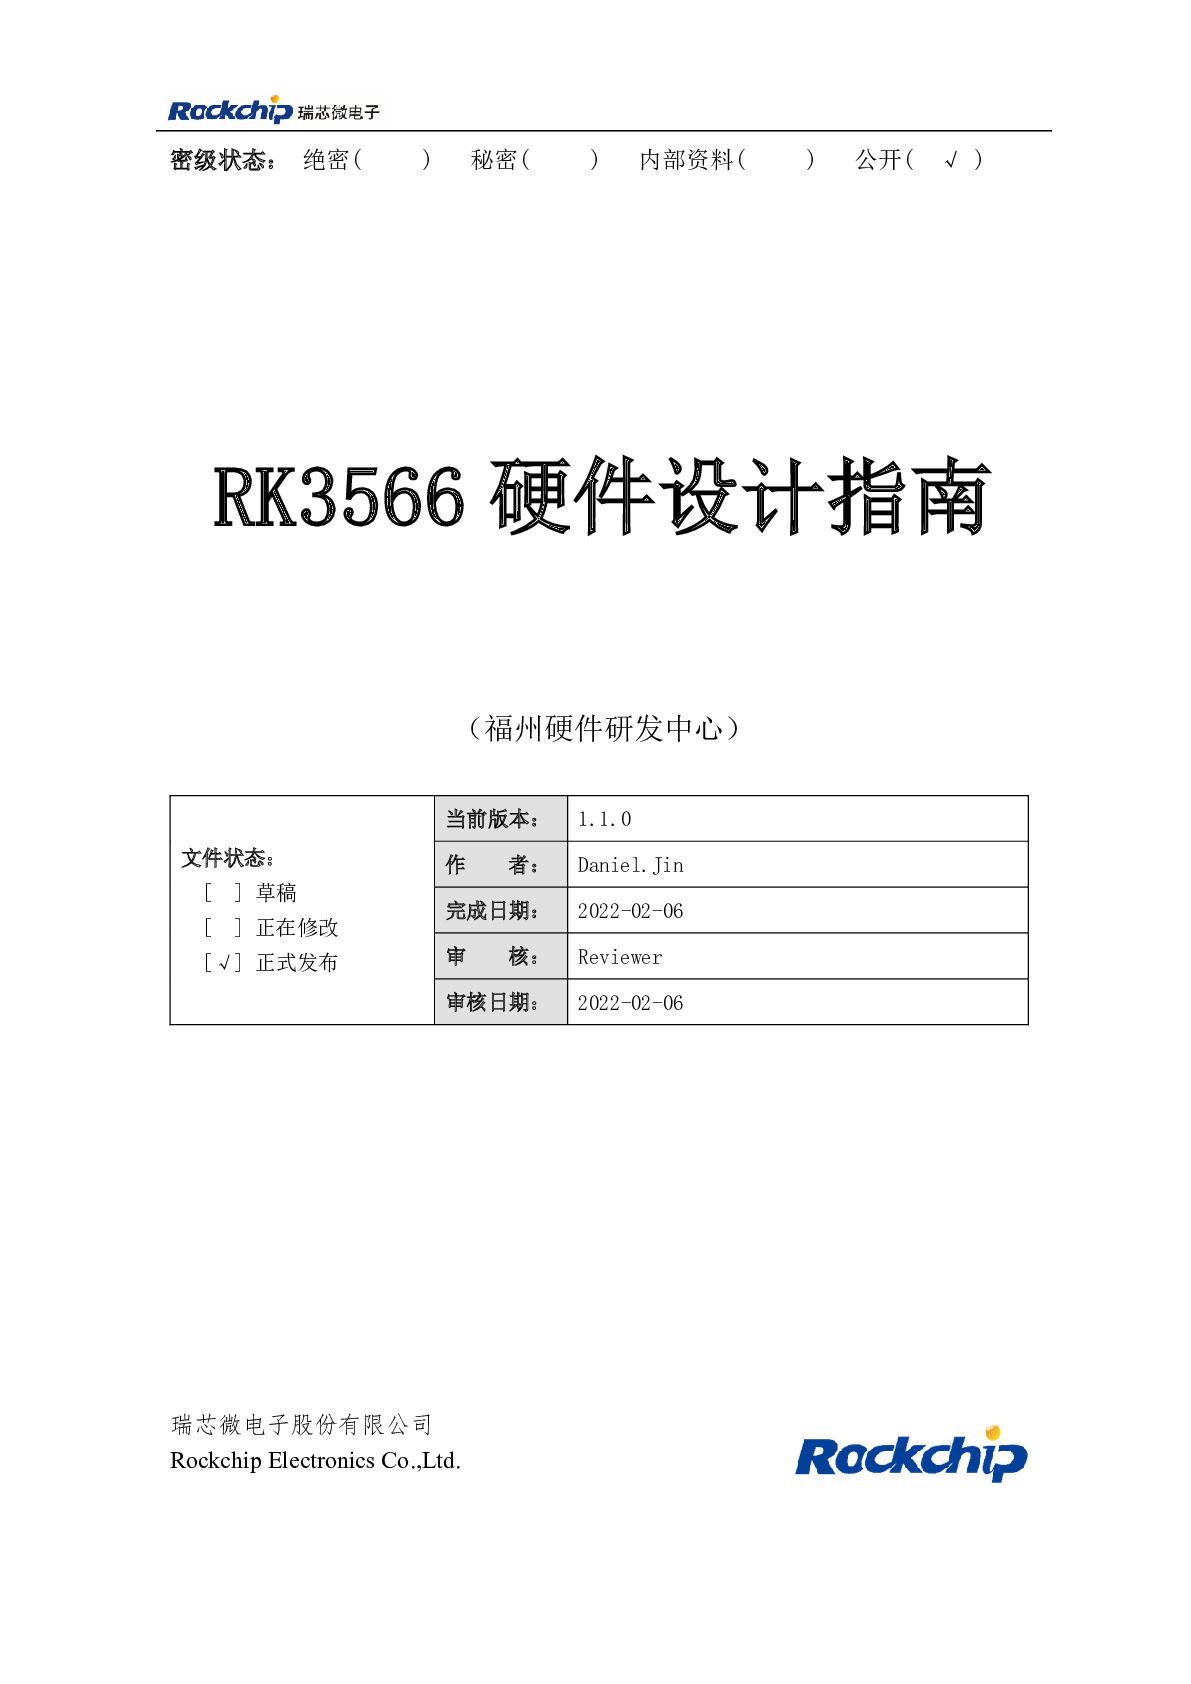 Rockchip_RK3566_Hardware_Design_Guide_V1.1_CN